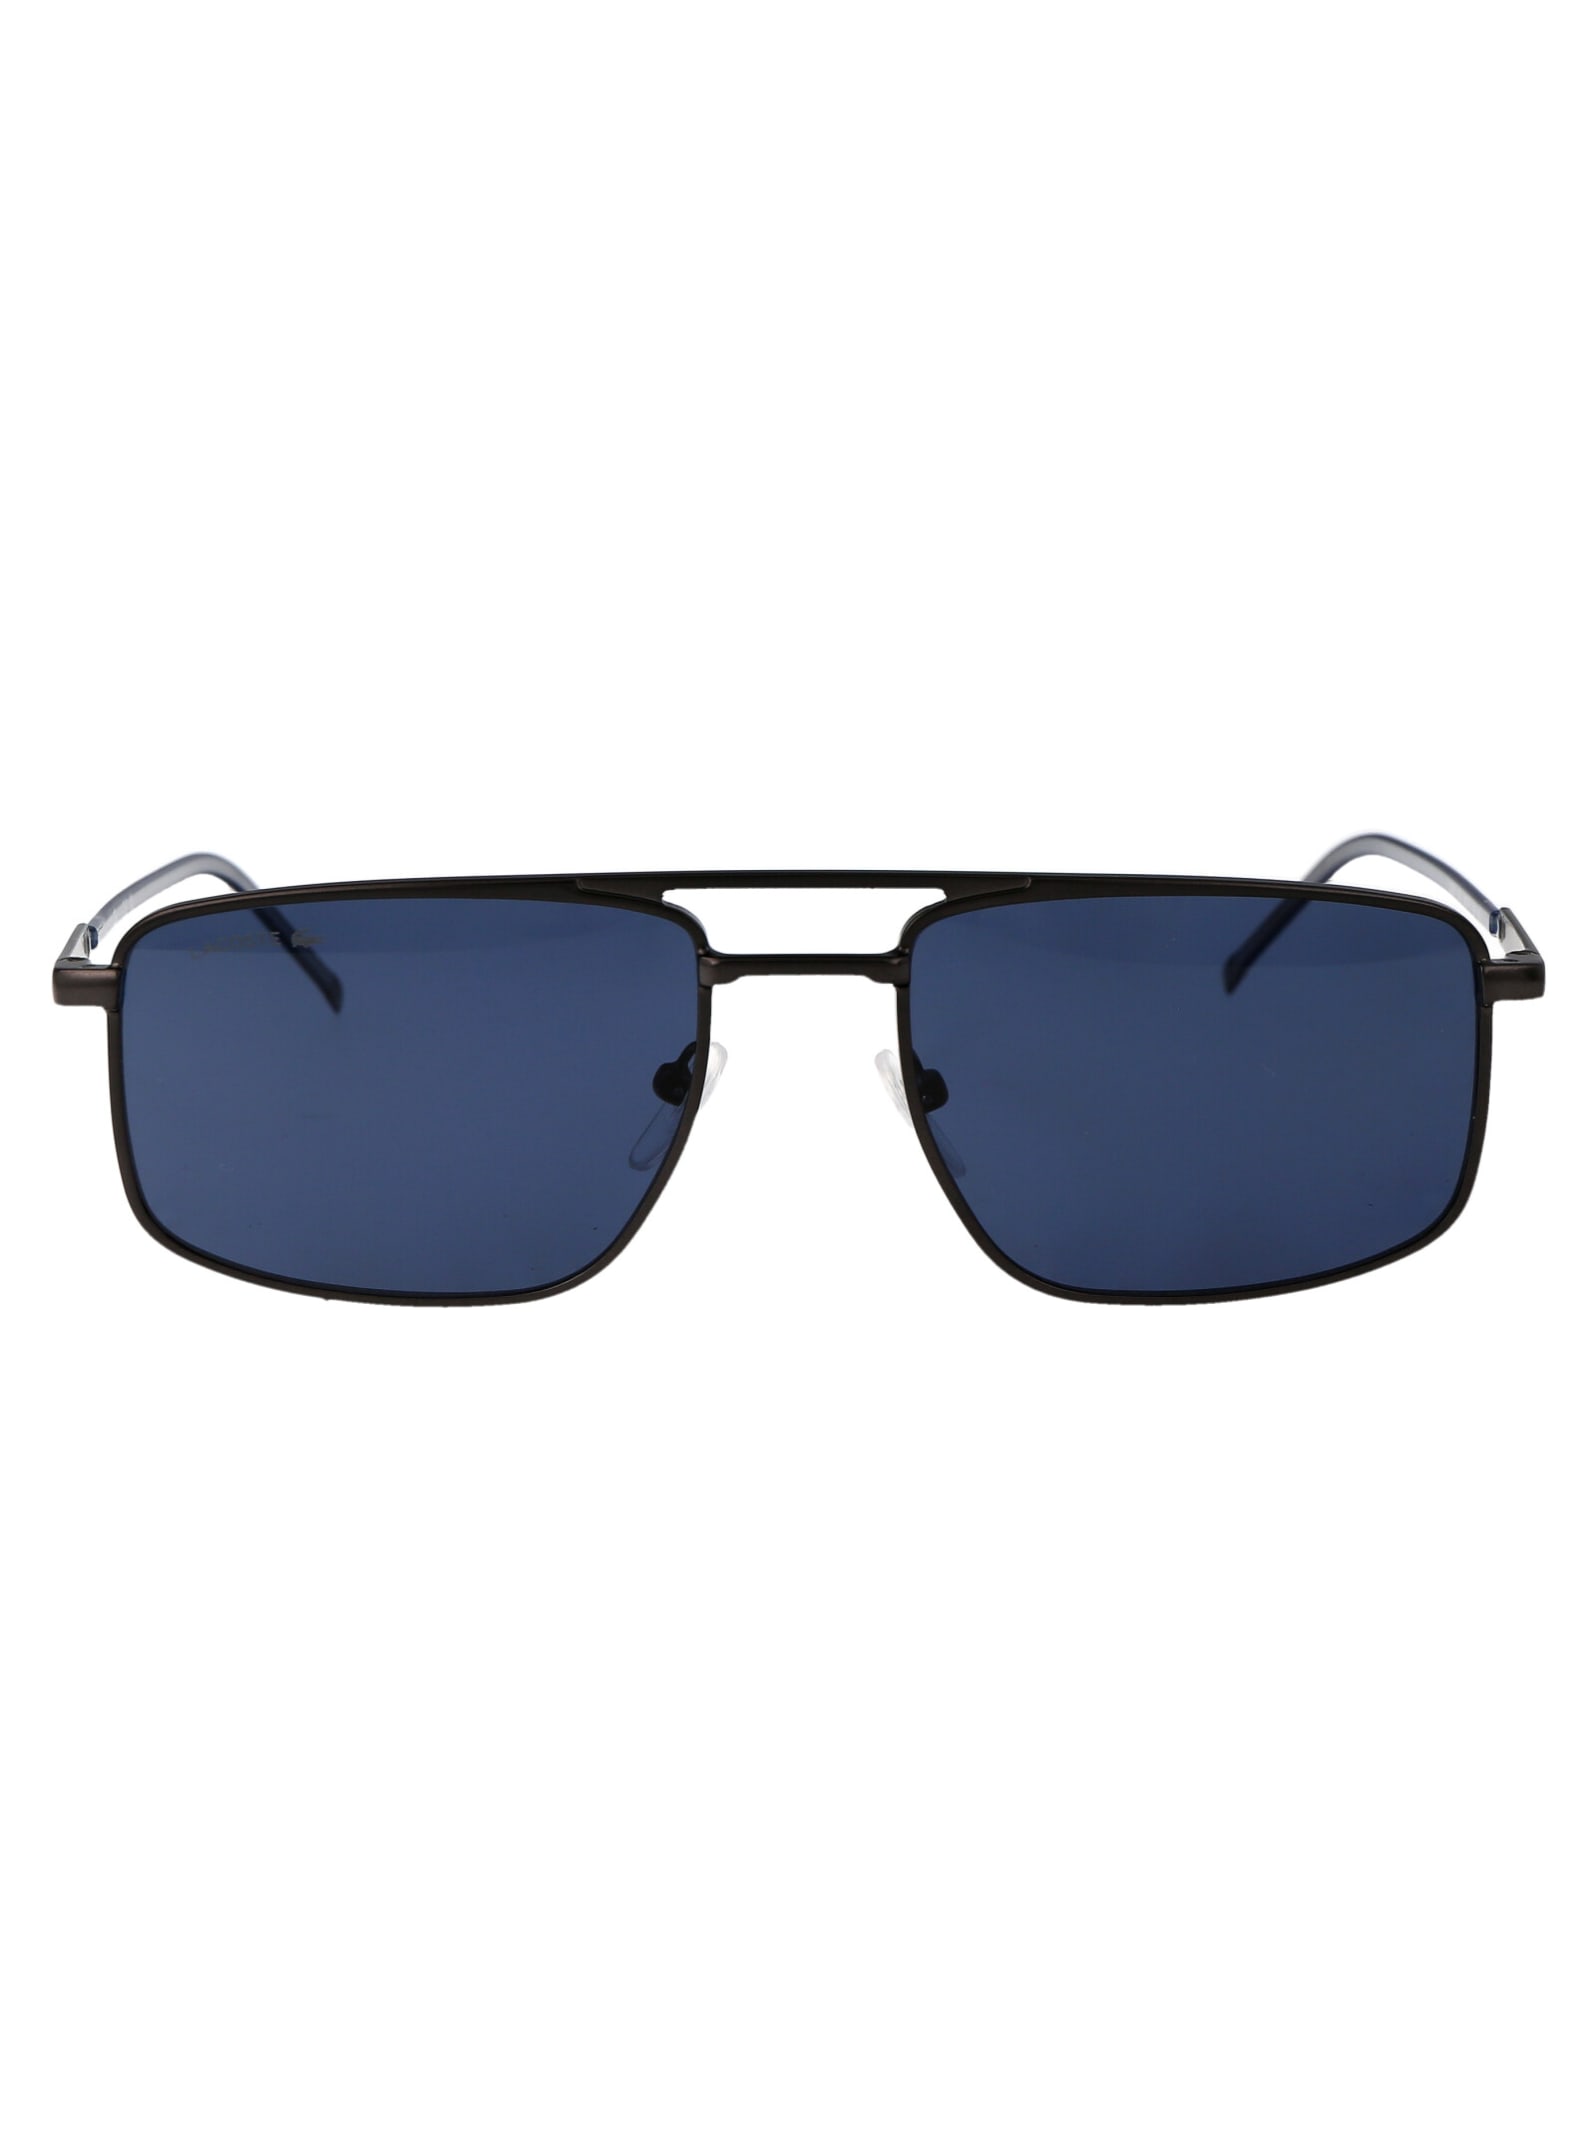 L255s Sunglasses